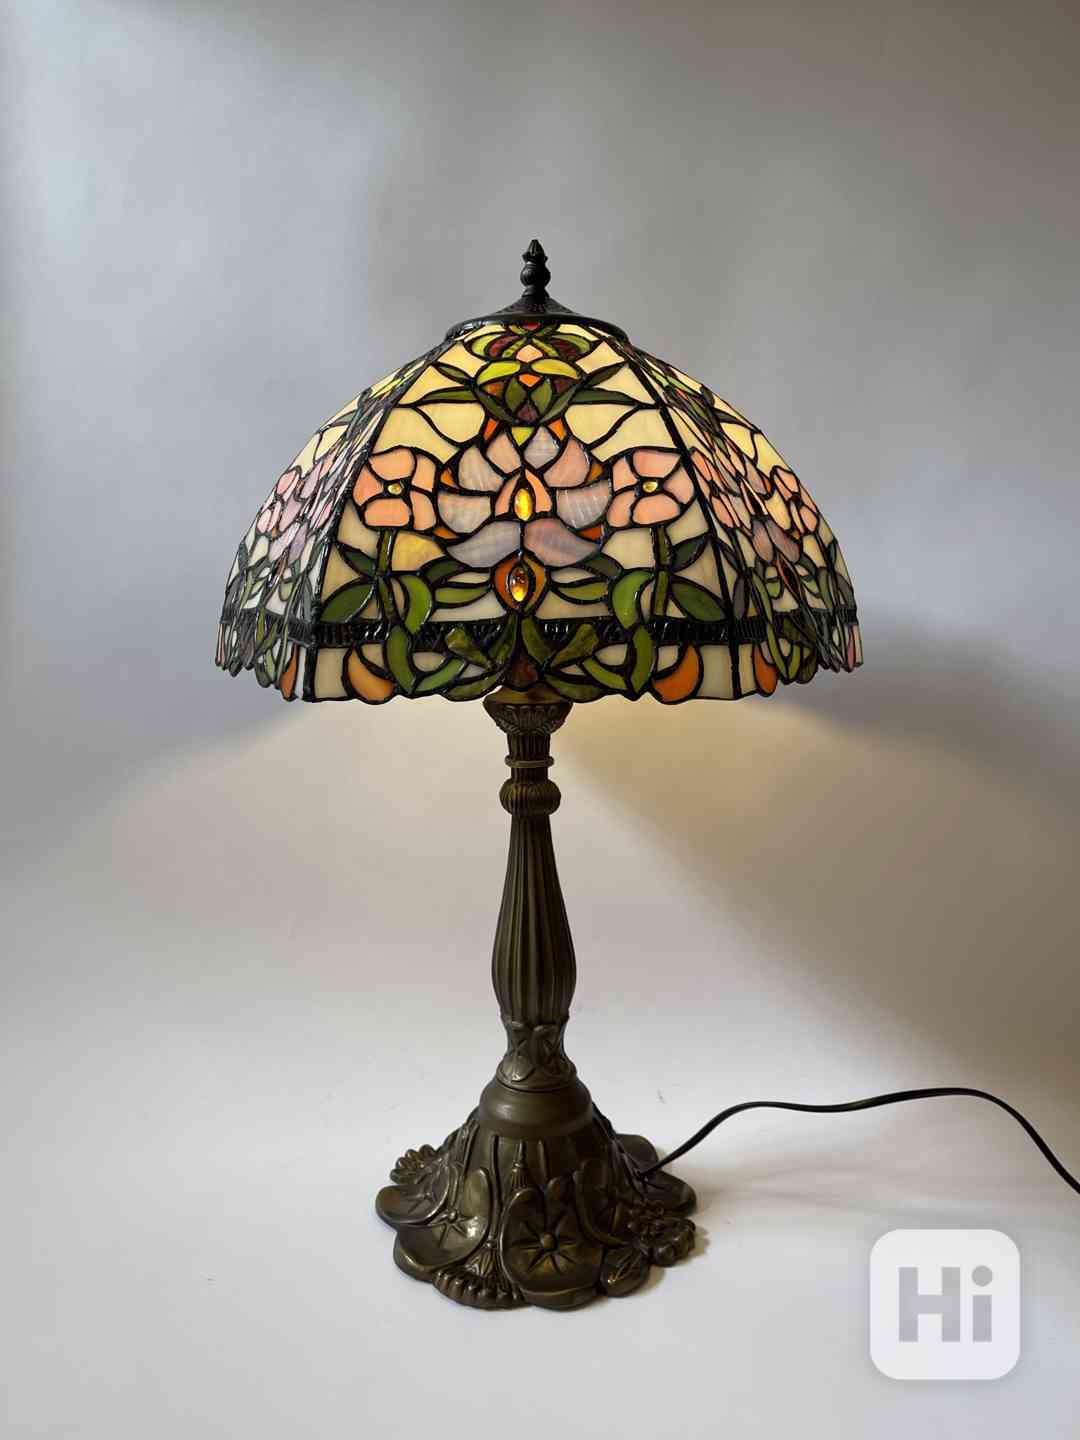 Velká stolní lampa Tiffany s květy - secesním styl - foto 1